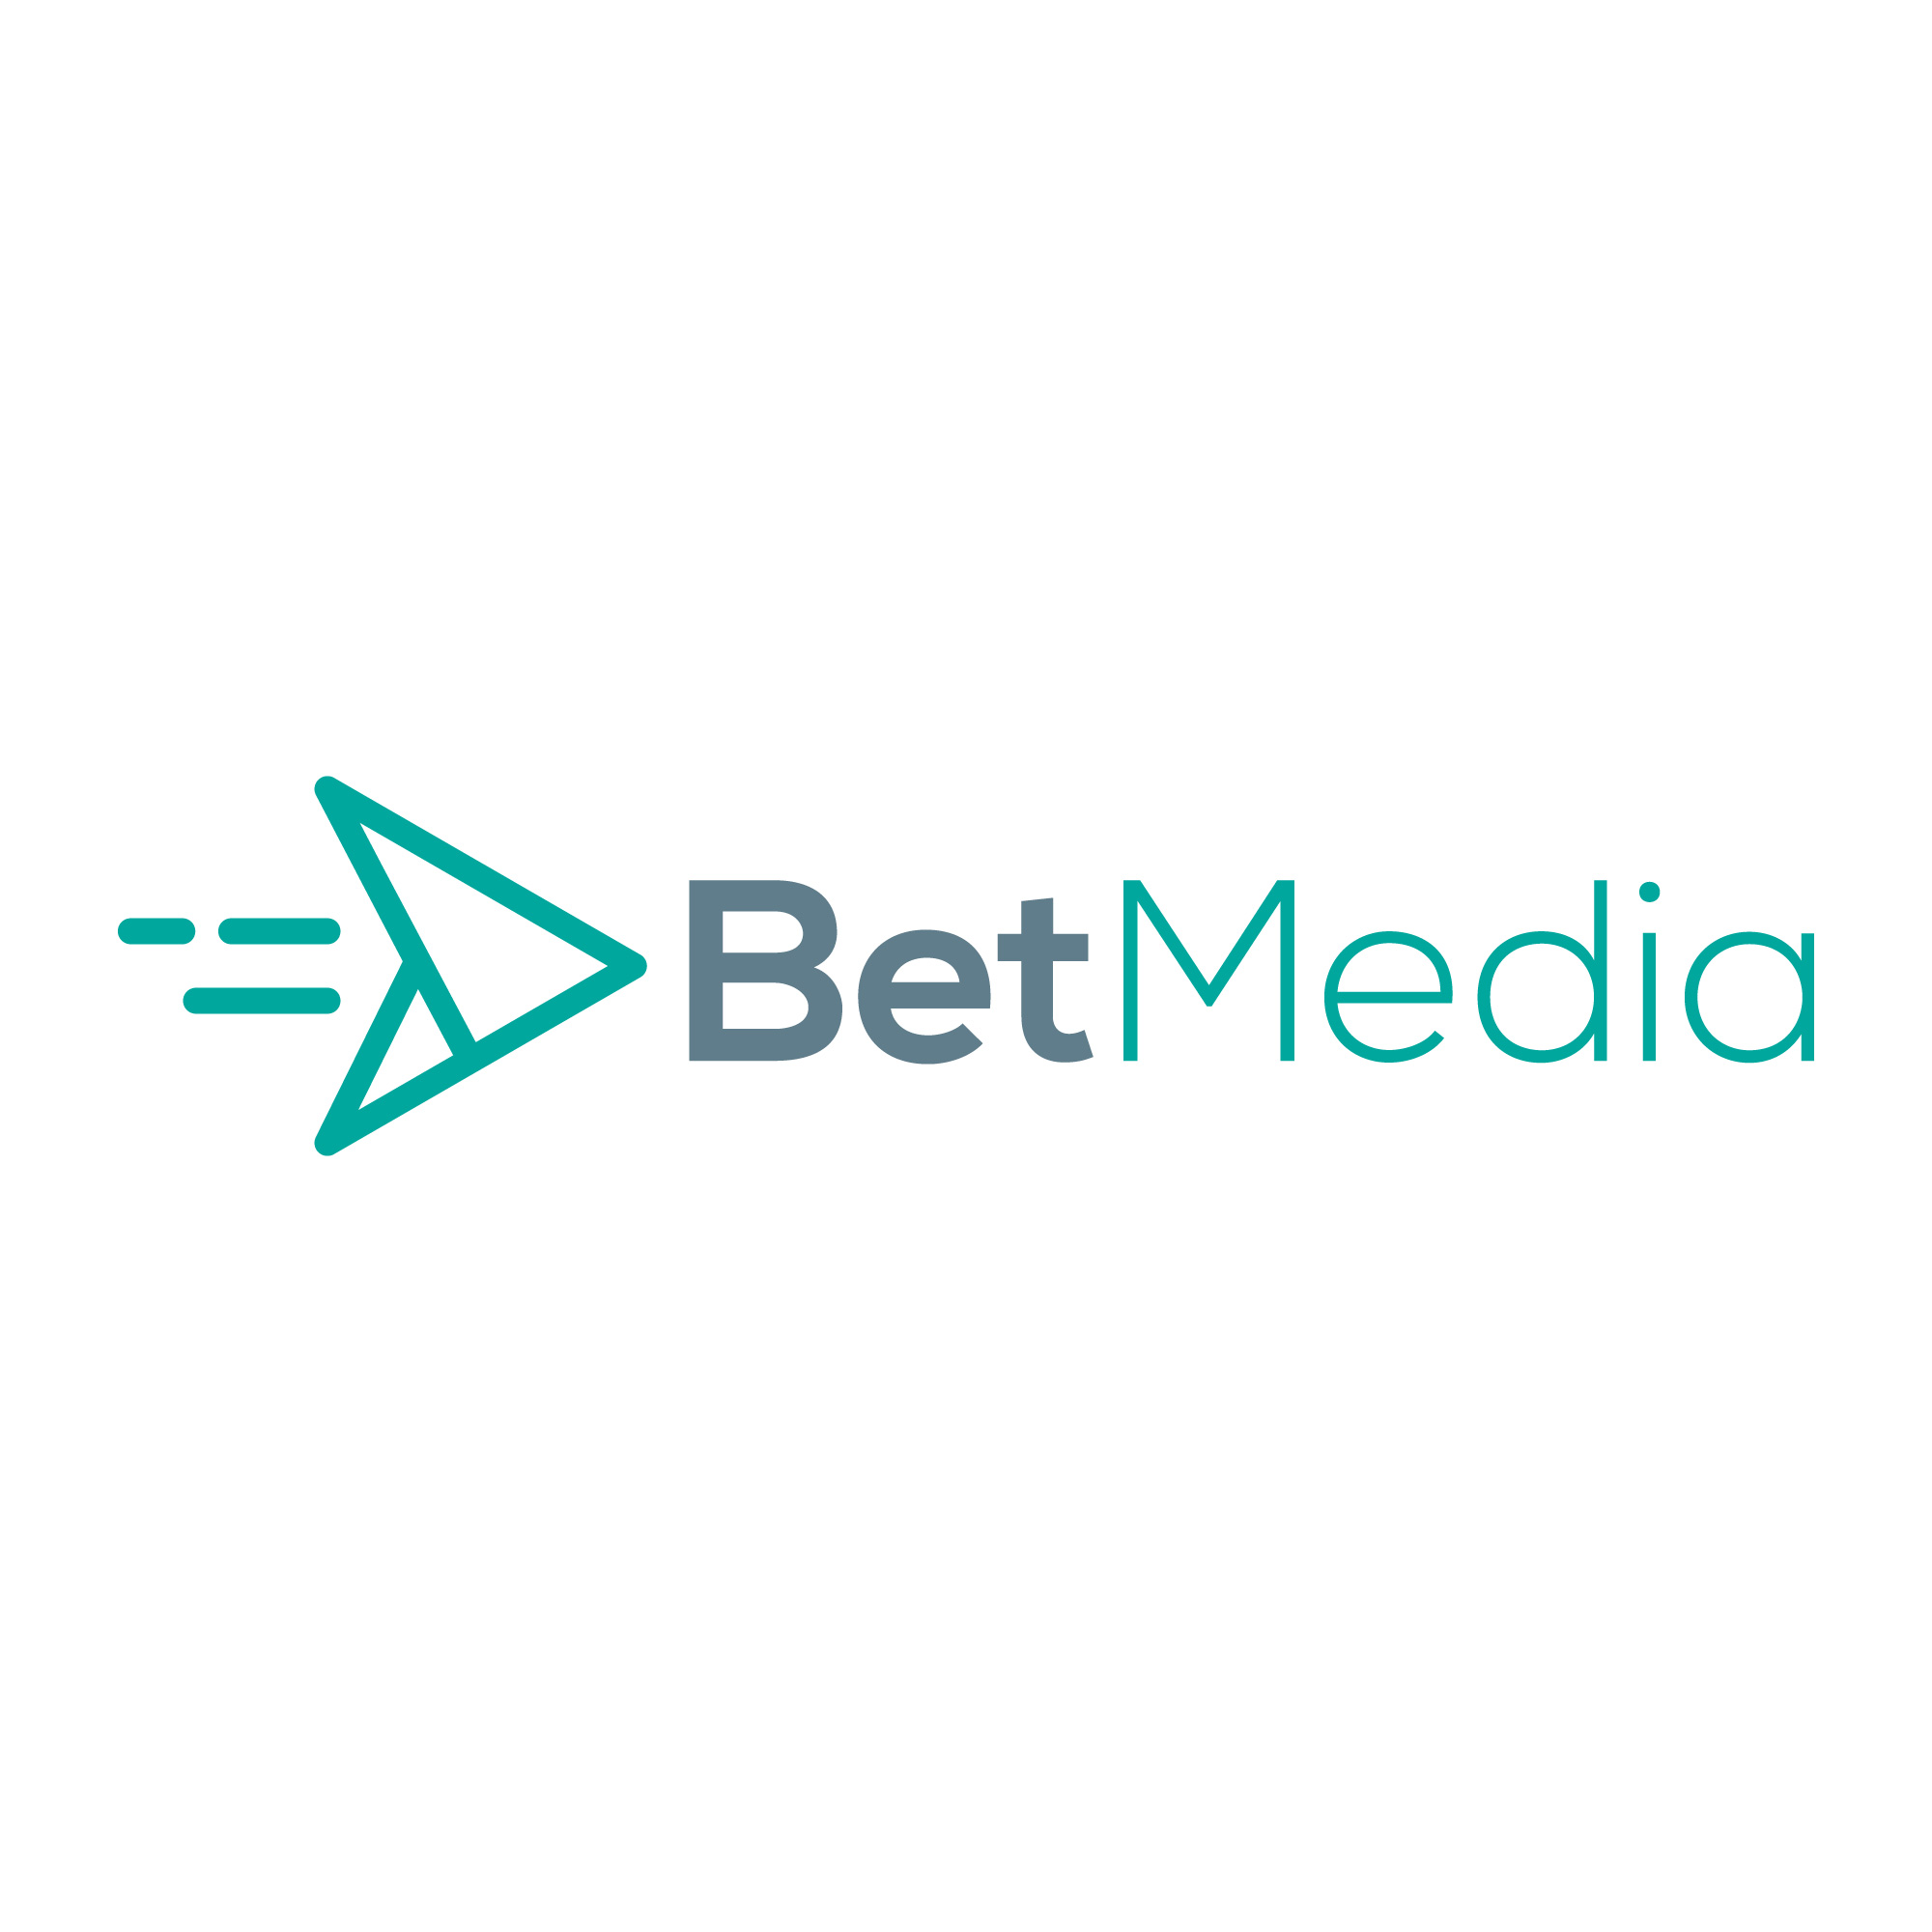 Bet Media Agency